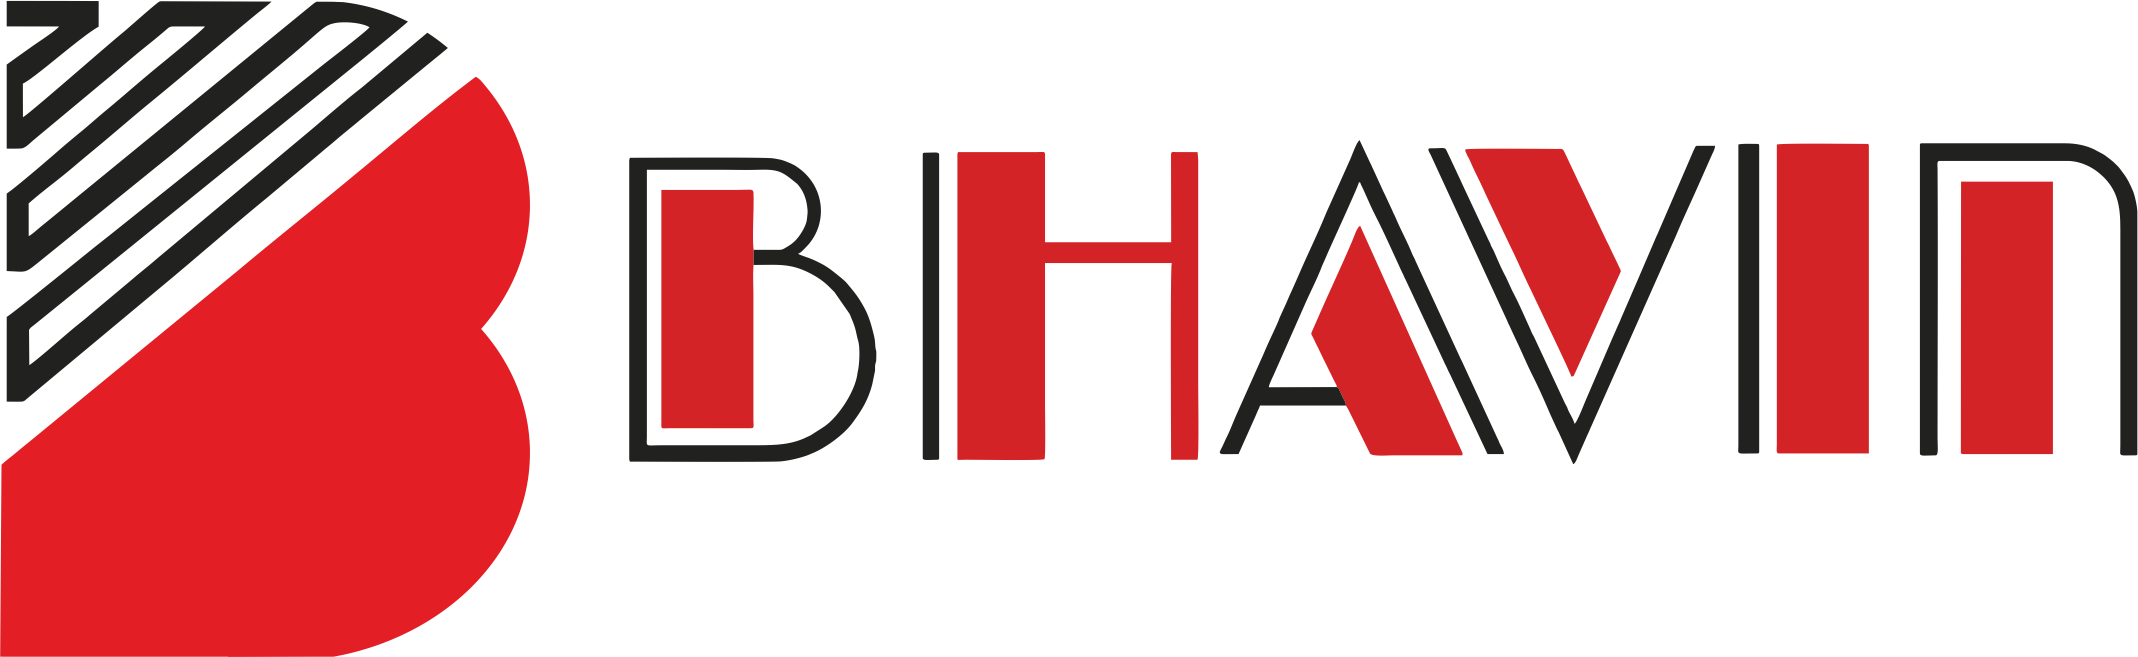 Bhavin Logo